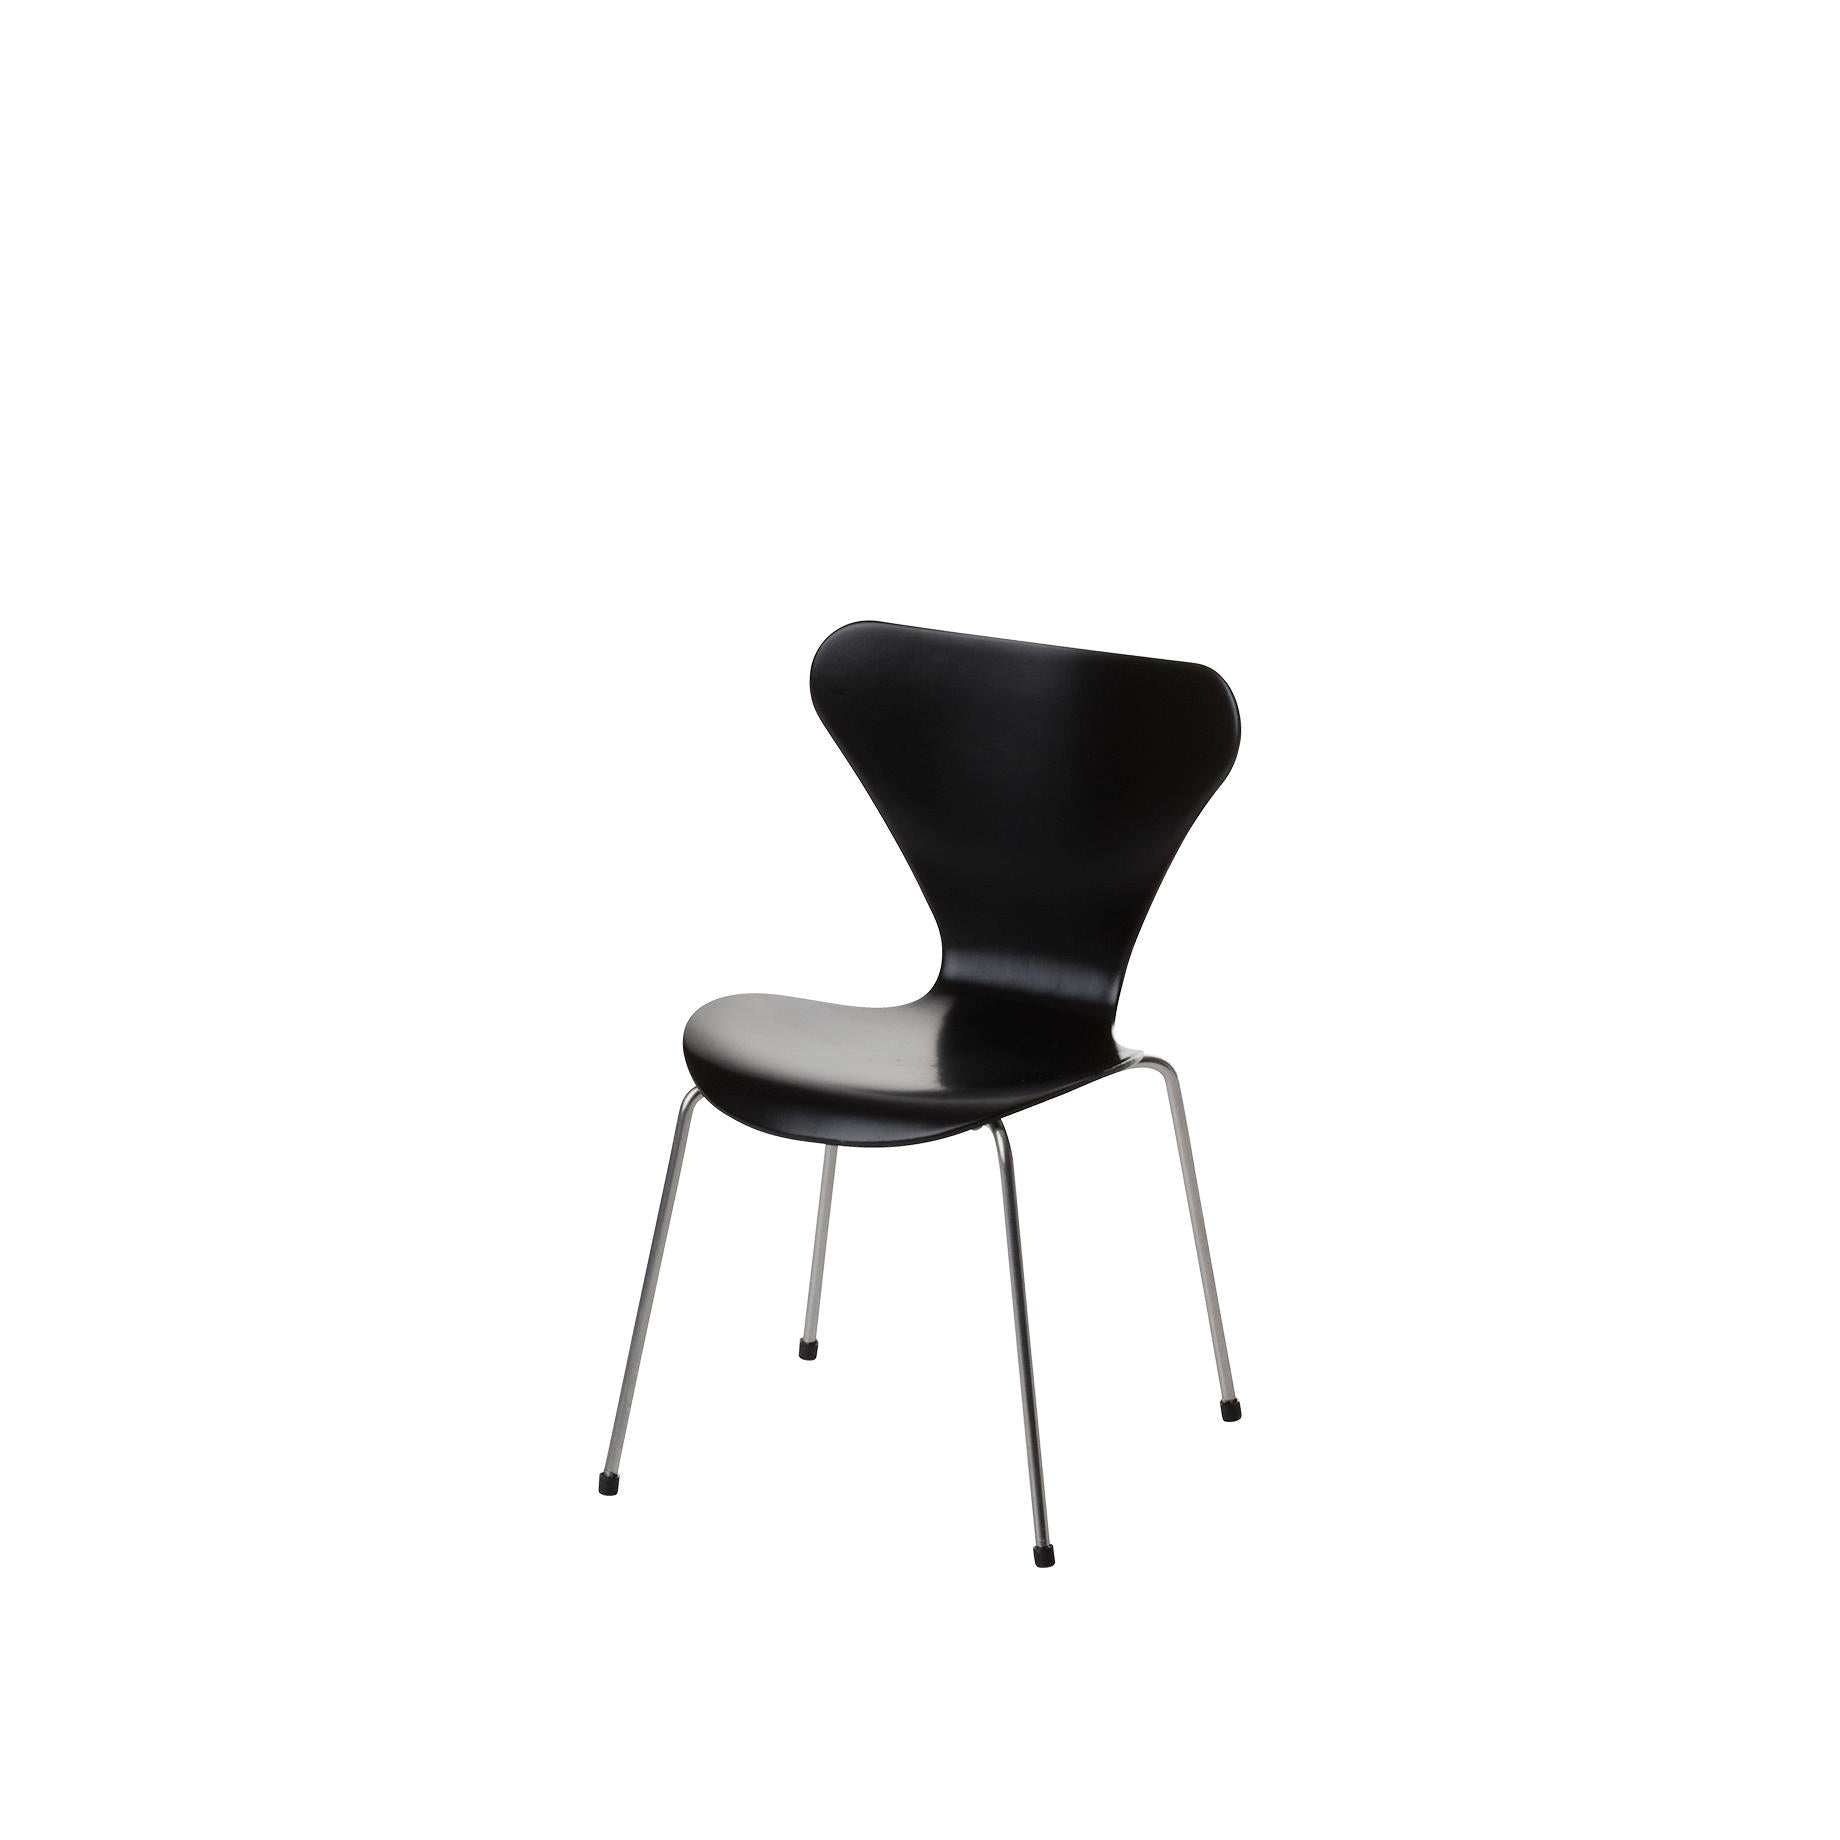 弗里茨·汉森（Fritz Hansen）微型椅子系列7，黑色